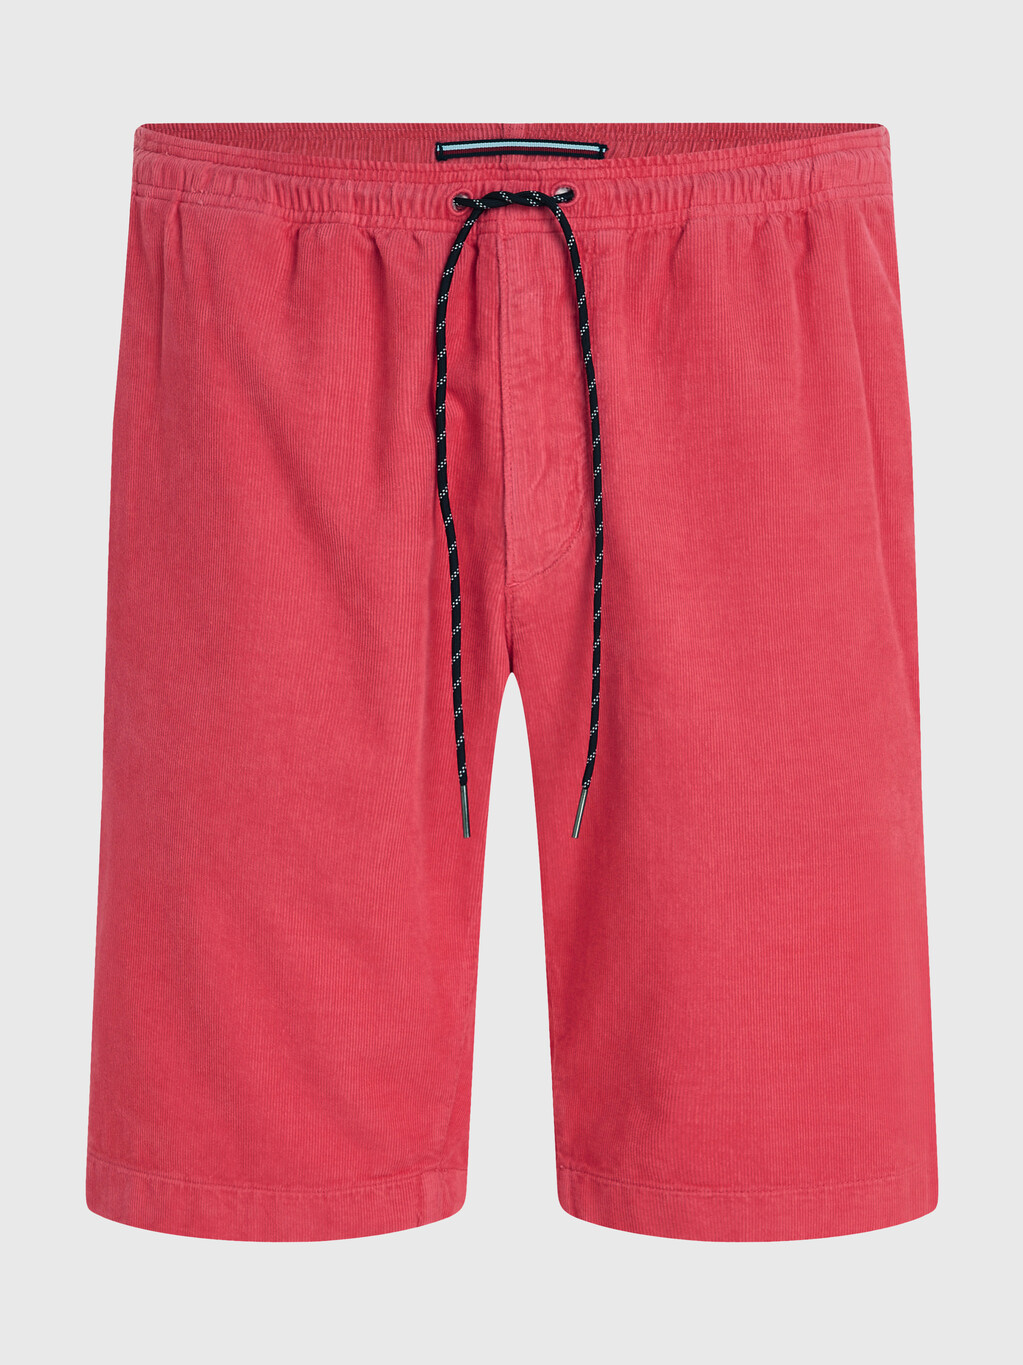 Harlem 燈芯絨寬鬆版型短褲, Deep Crimson Fruit, hi-res